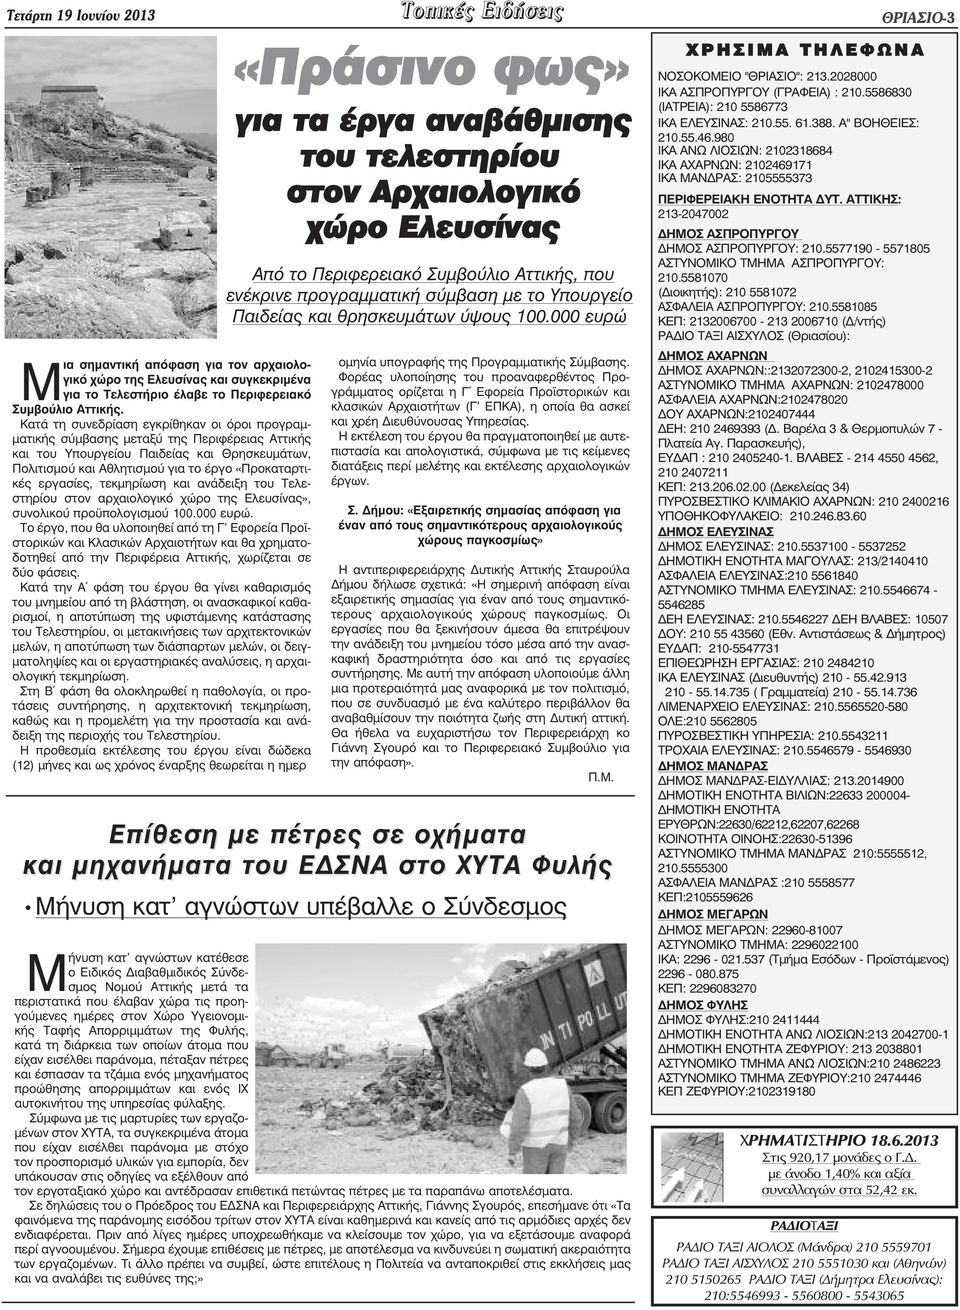 εργασίες, τεκµηρίωση και ανάδειξη του Τελεστηρίου στον αρχαιολογικό χώρο της Ελευσίνας», συνολικού προ πολογισµού 100.000 ευρώ.